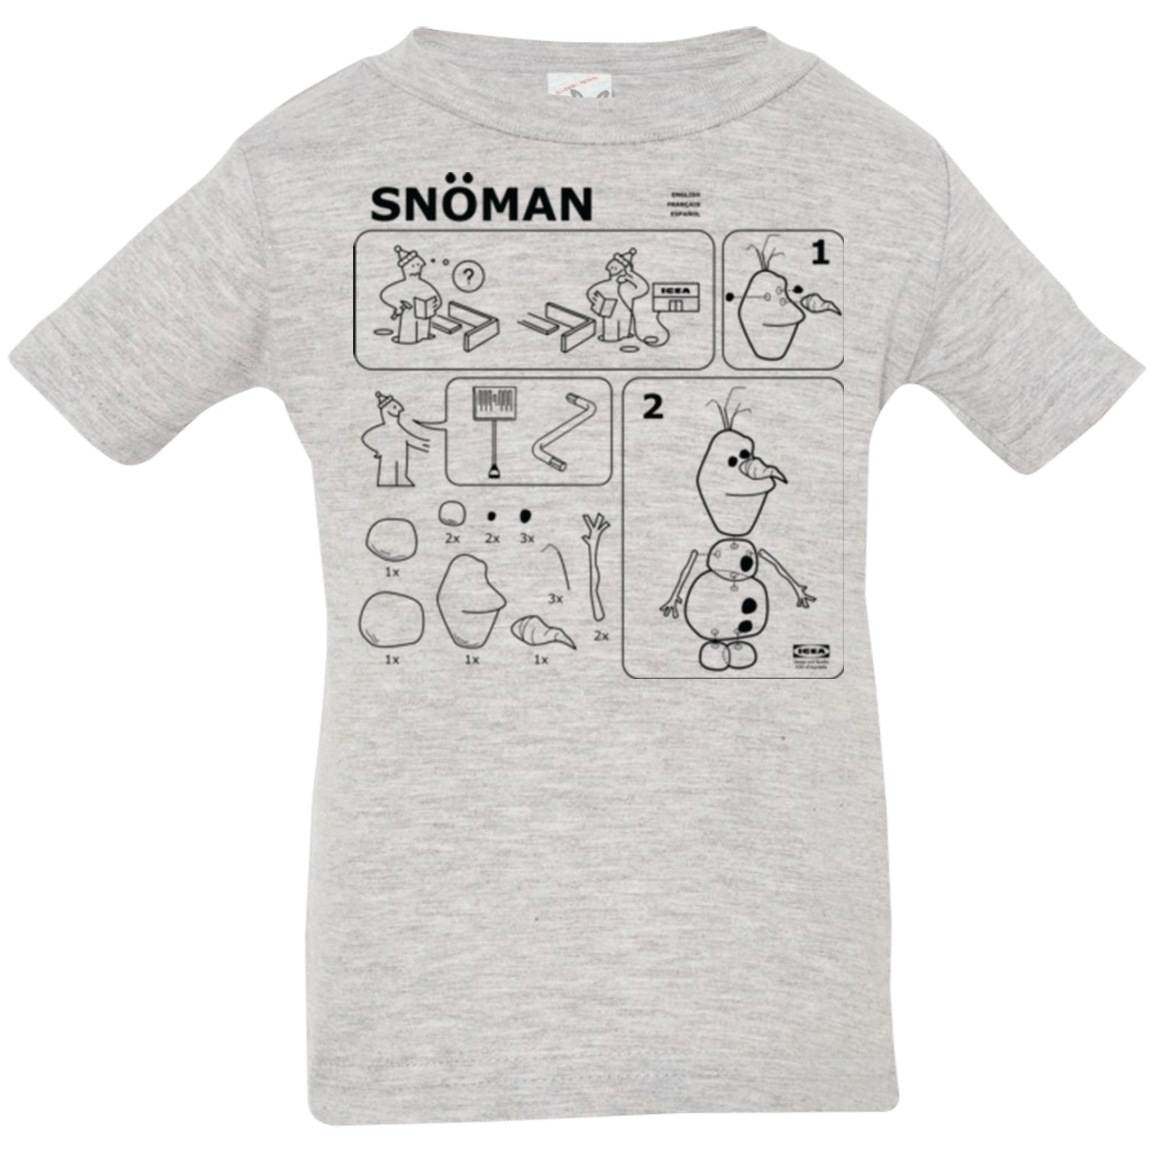 T-Shirts Heather / 6 Months Build a Snowman Infant Premium T-Shirt